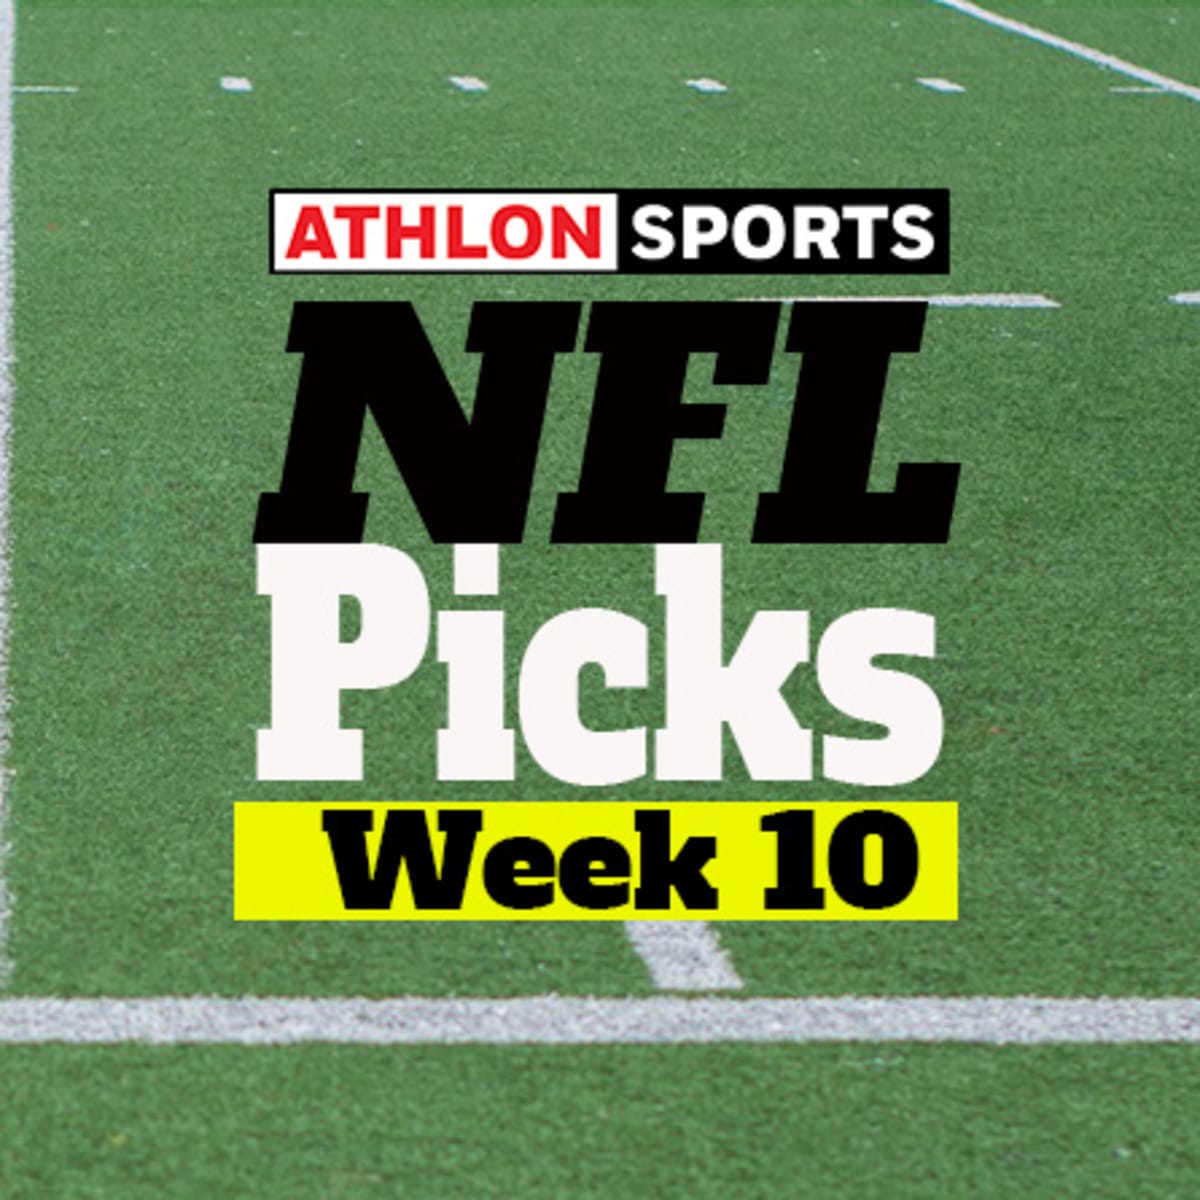 week 10 expert picks